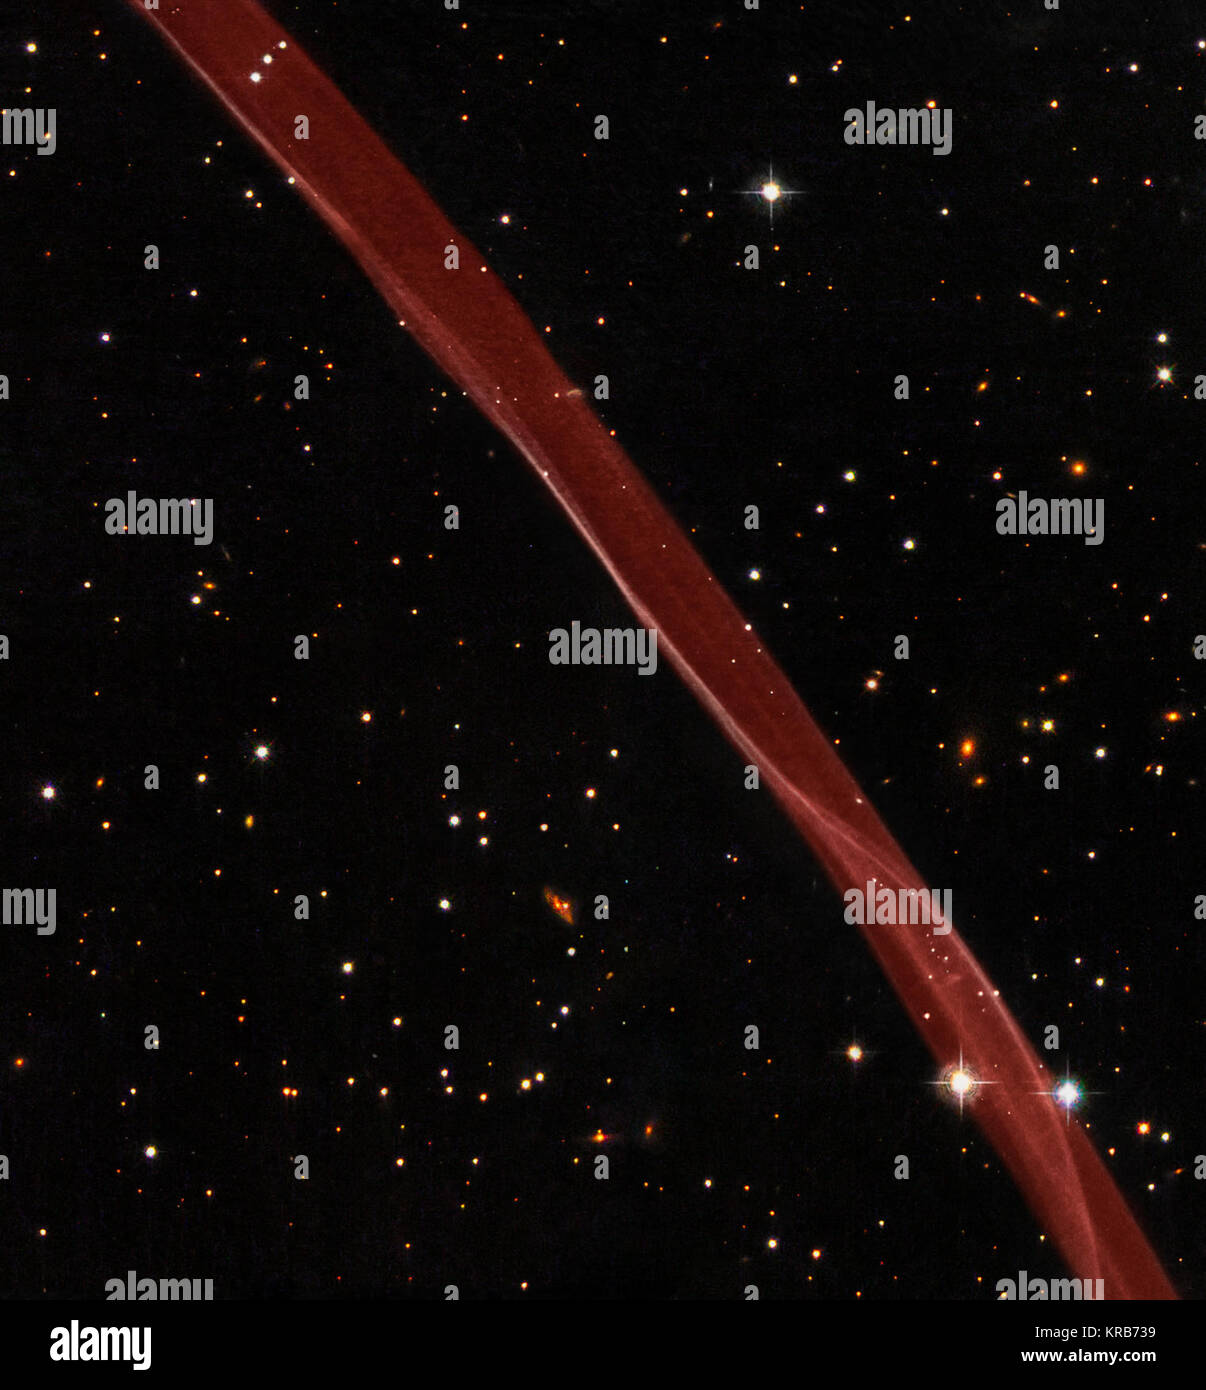 Dieses Bild ist ein Verbund von Wasserstoff - Licht Beobachtungen mit Hubble's Advanced Camera für Umfragen im Februar 2006 und weites Feld Planetary Kamera 2 Beobachtungen in blau, gelb-grün, und nah-infraroten Licht im April 2008 getroffen. Die Überreste einer Supernova, nur sichtbar im Wasserstoff-Licht Filter wurde ein roter Farbton in dieser Farbe Bild zugeordnet. Teil der Überreste einer Supernova SN 1006 mit der NASA und ESA Hubble Space Telescope 01 gesehen Stockfoto